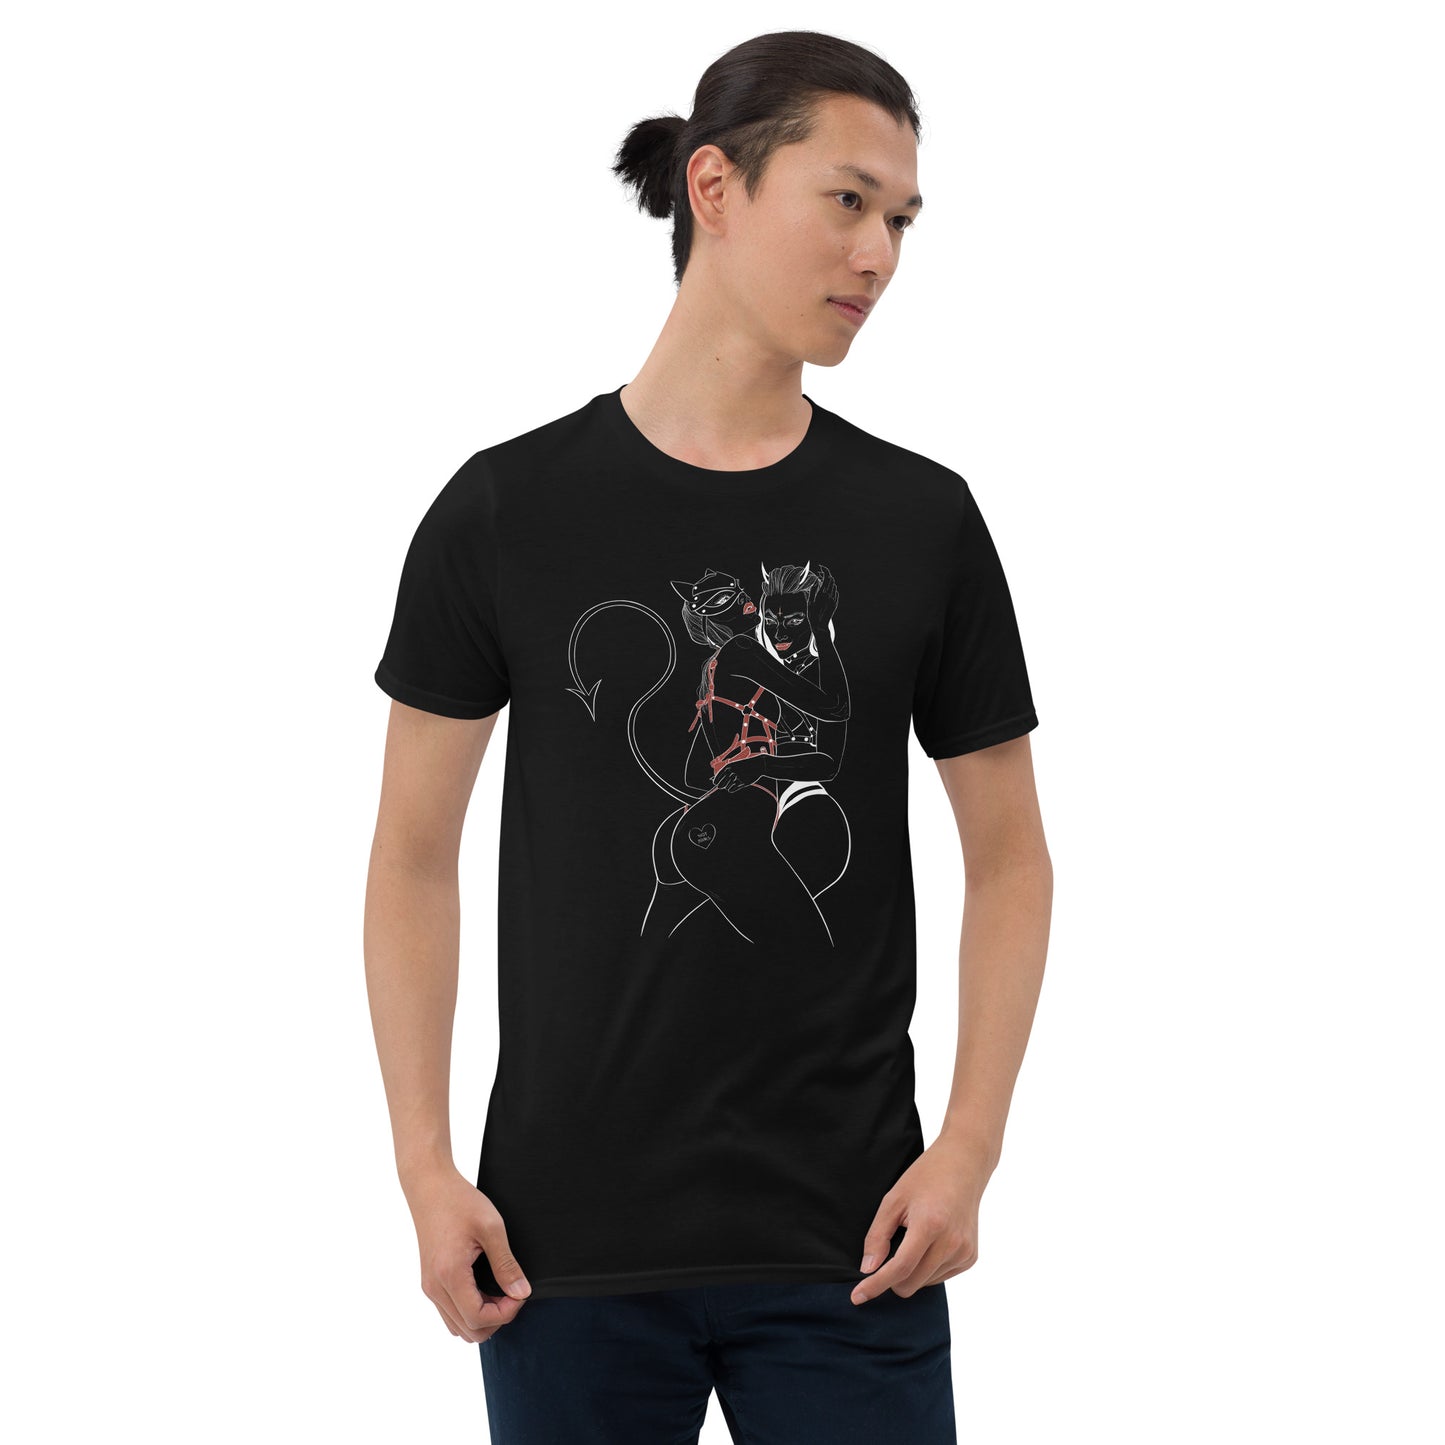 Darklily Art Playful Little Demons Design T-Shirt